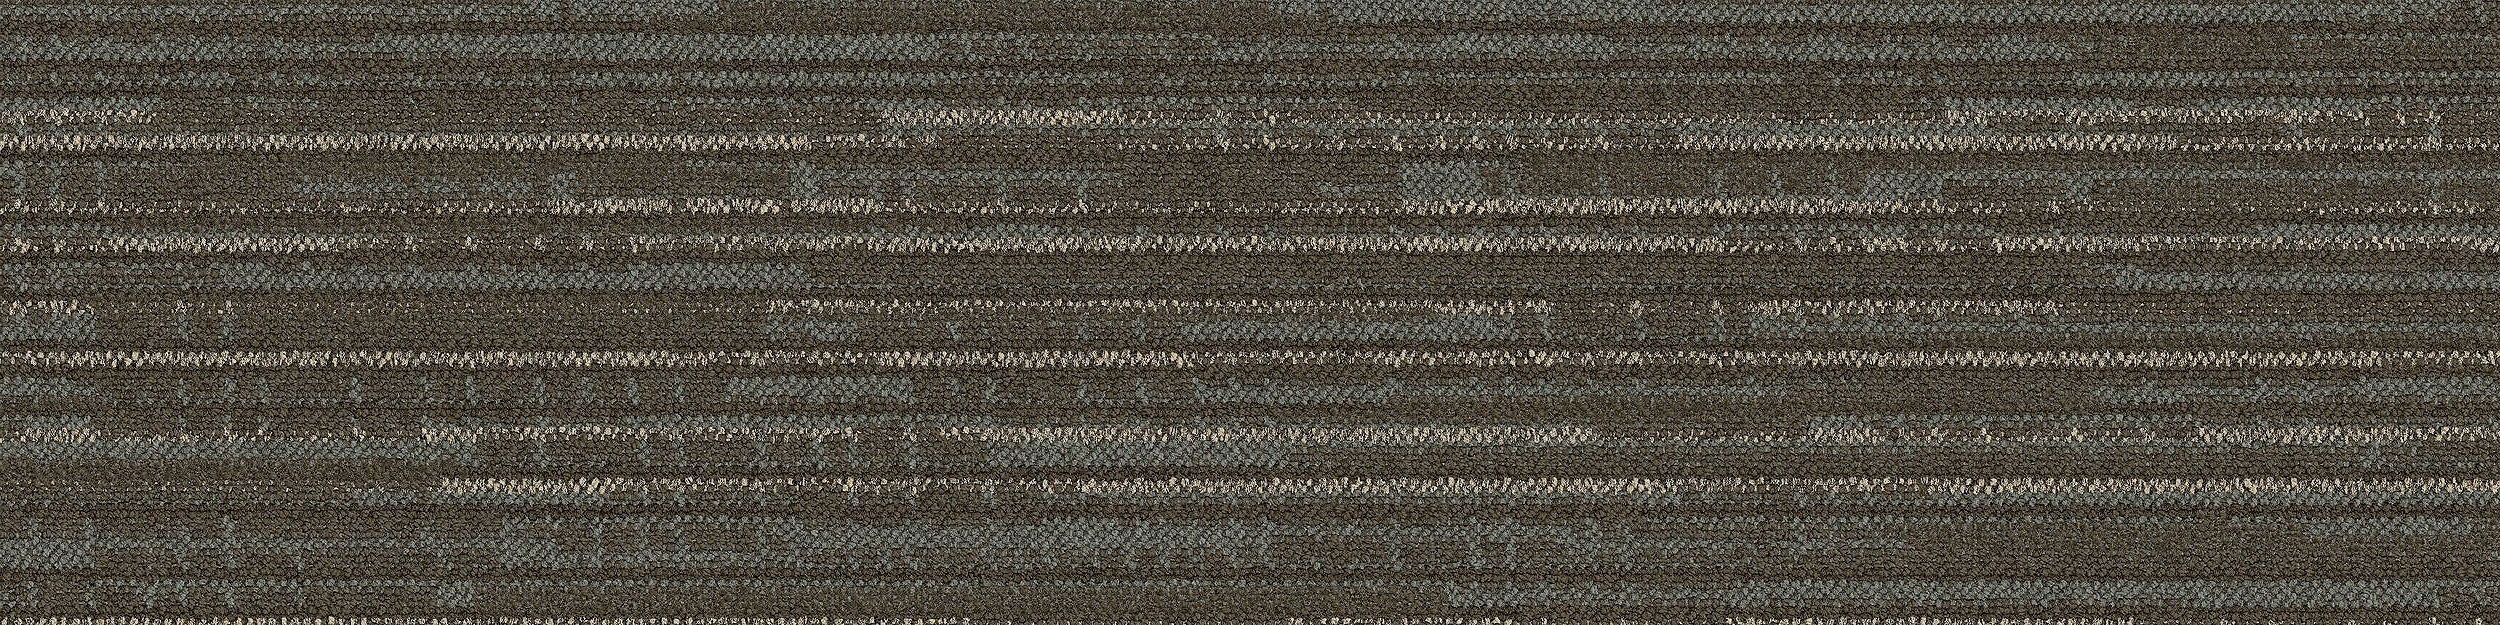 RMS 703 Carpet Tile In Retreat imagen número 8